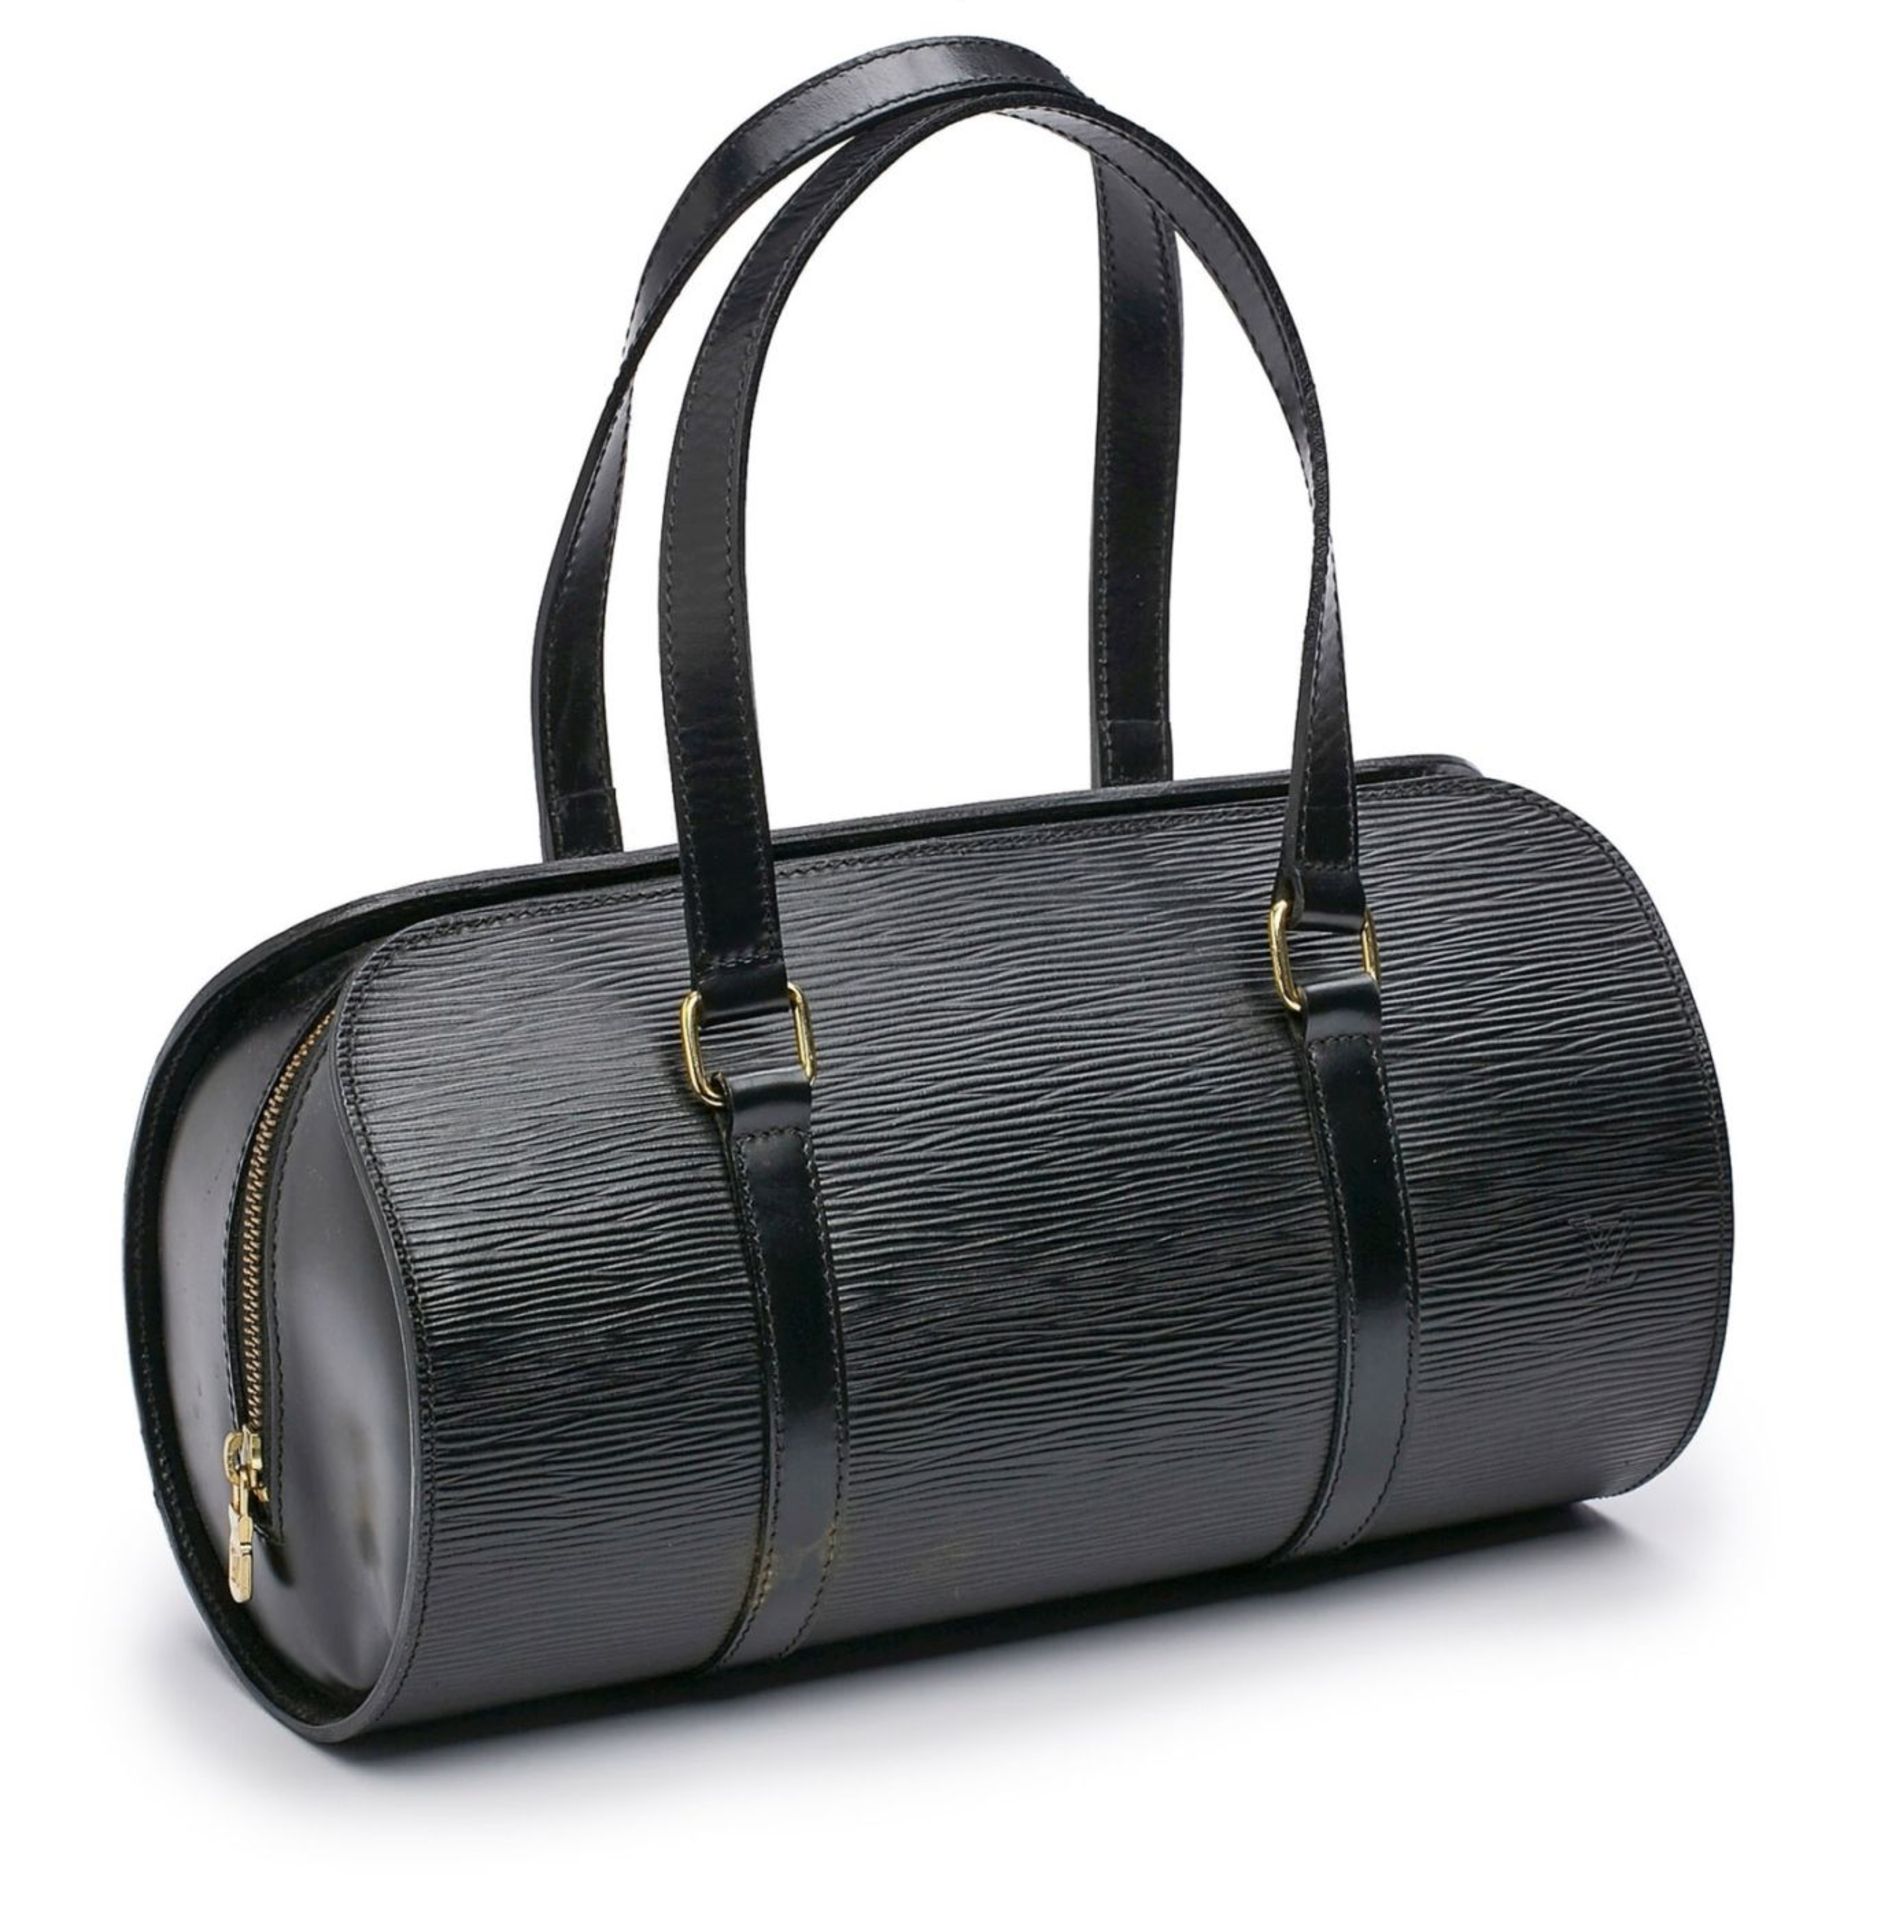 Handtasche "Papillon" mit Pochette, Louis Vuitton Ende 20. Jh. - Bild 2 aus 2